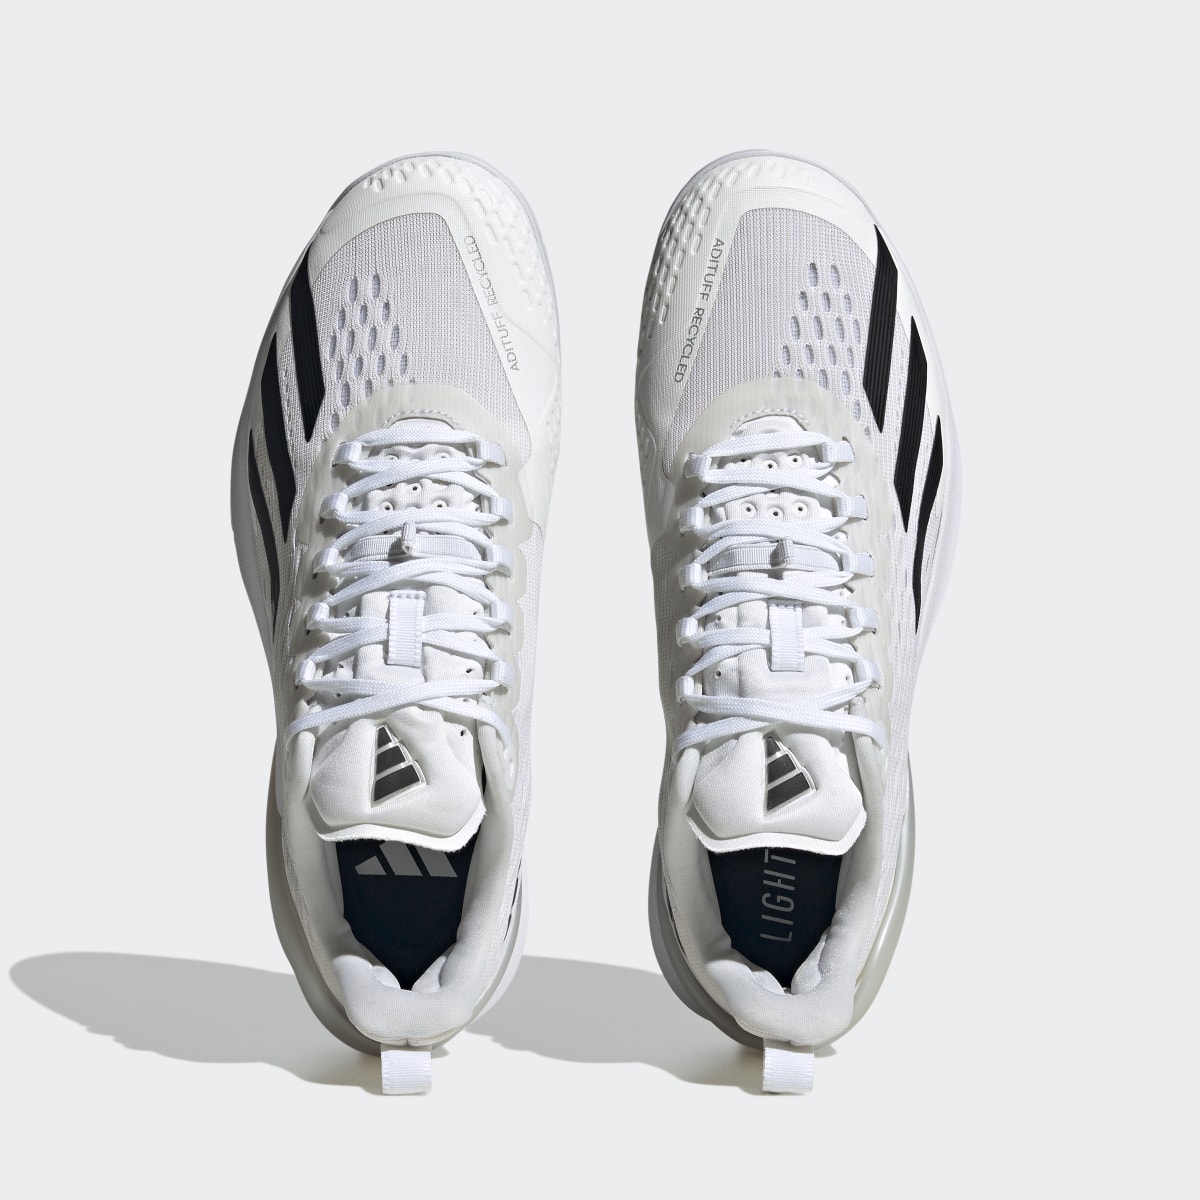 Adidas Adizero Cybersonic Tennis Shoes. 6